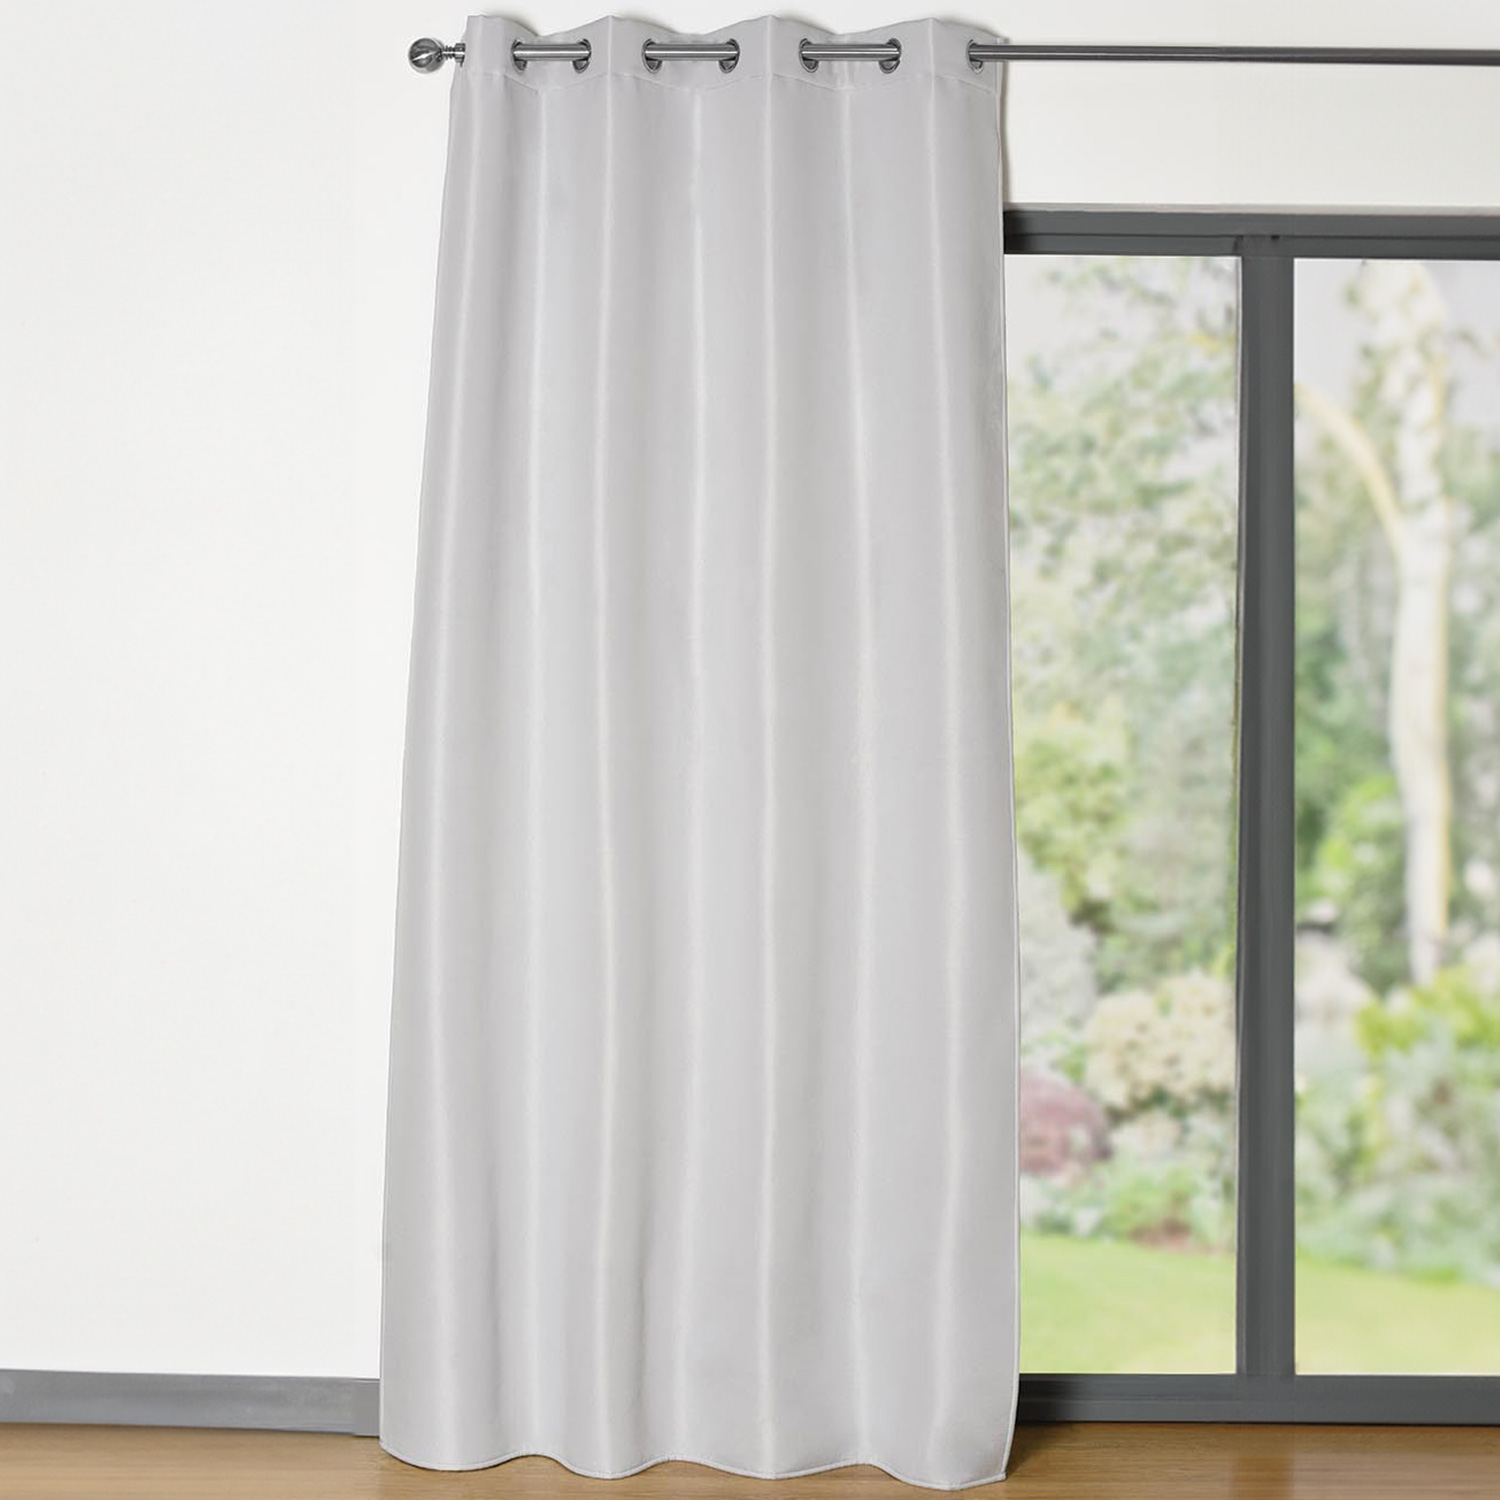 Multi-Purpose Curtain Panel Grey Image 1